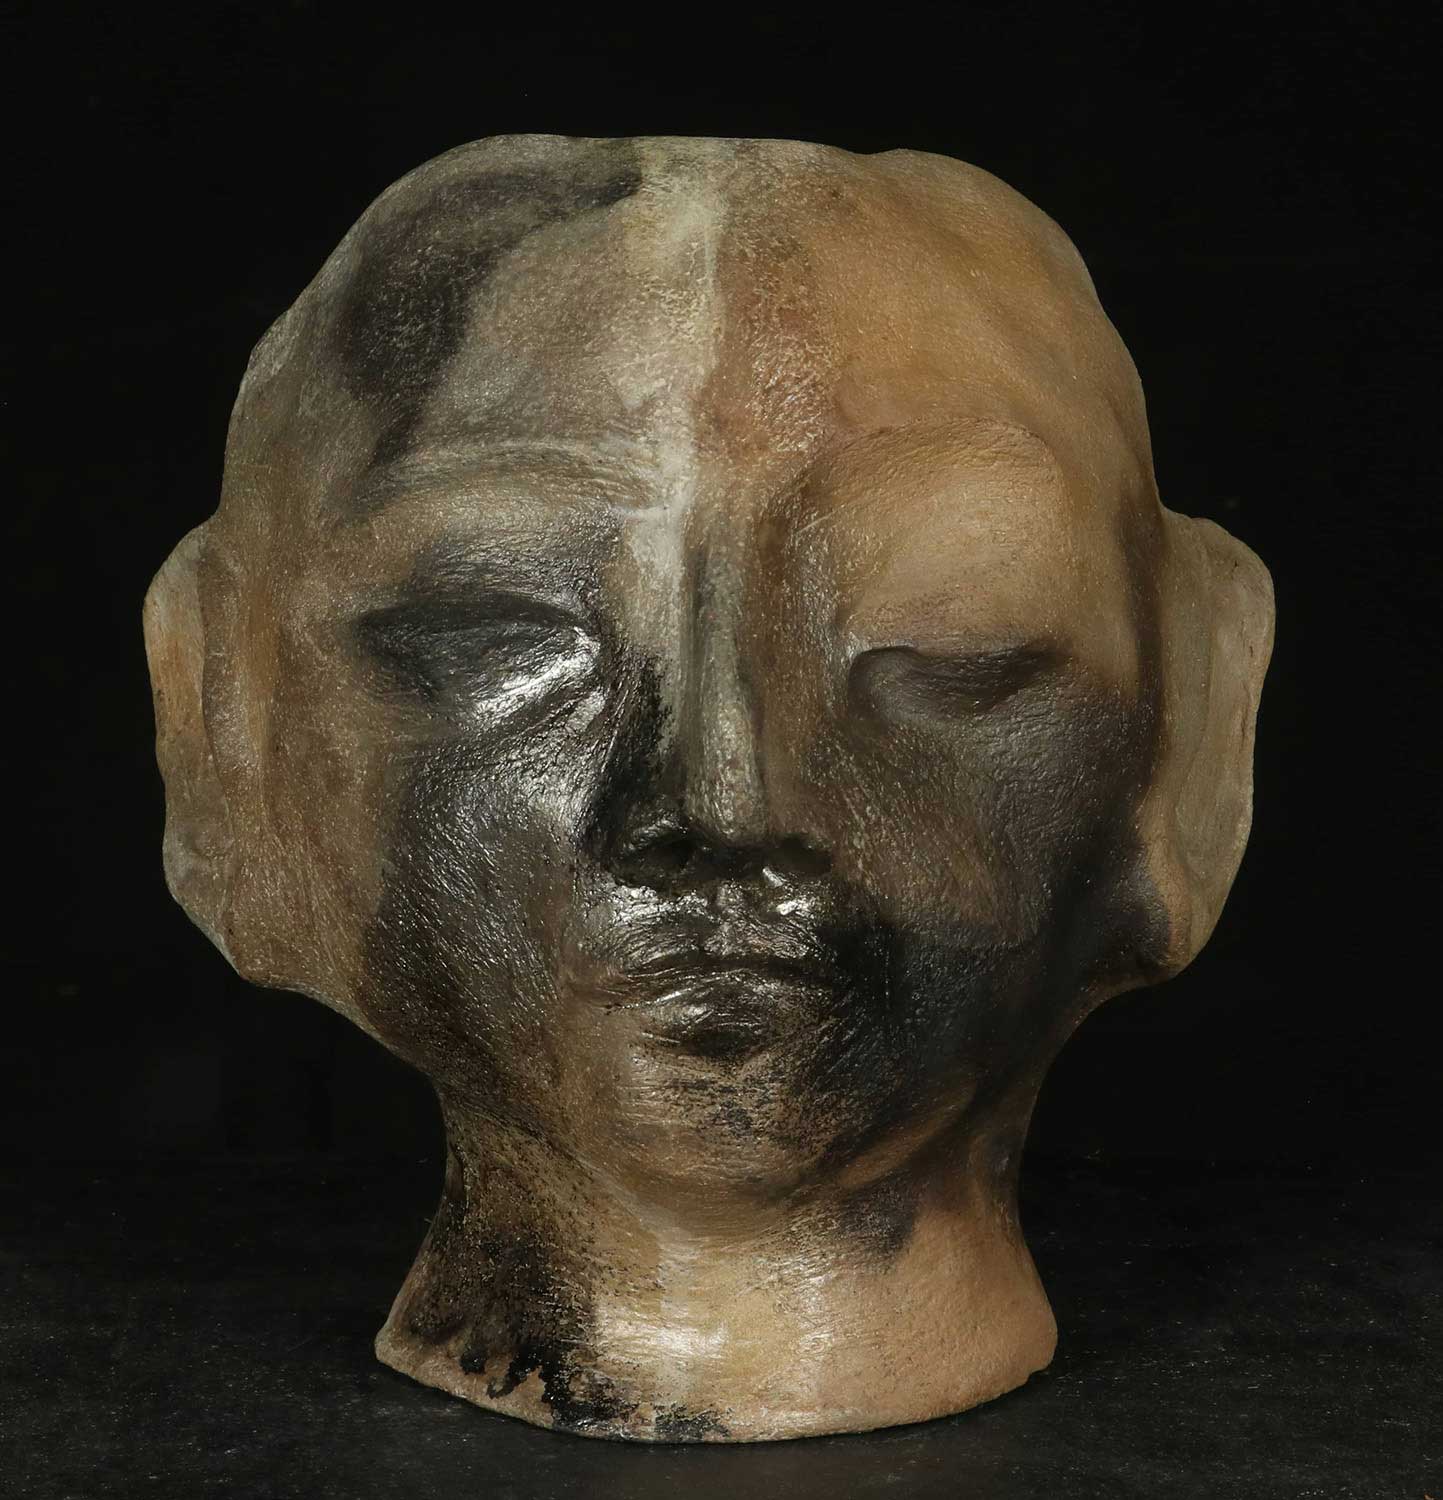 Nicolas-Pierre Réveillard, sculptur « Tête d’homme parmi les étoiles» ∼ «Man’s head among the stars » (2)